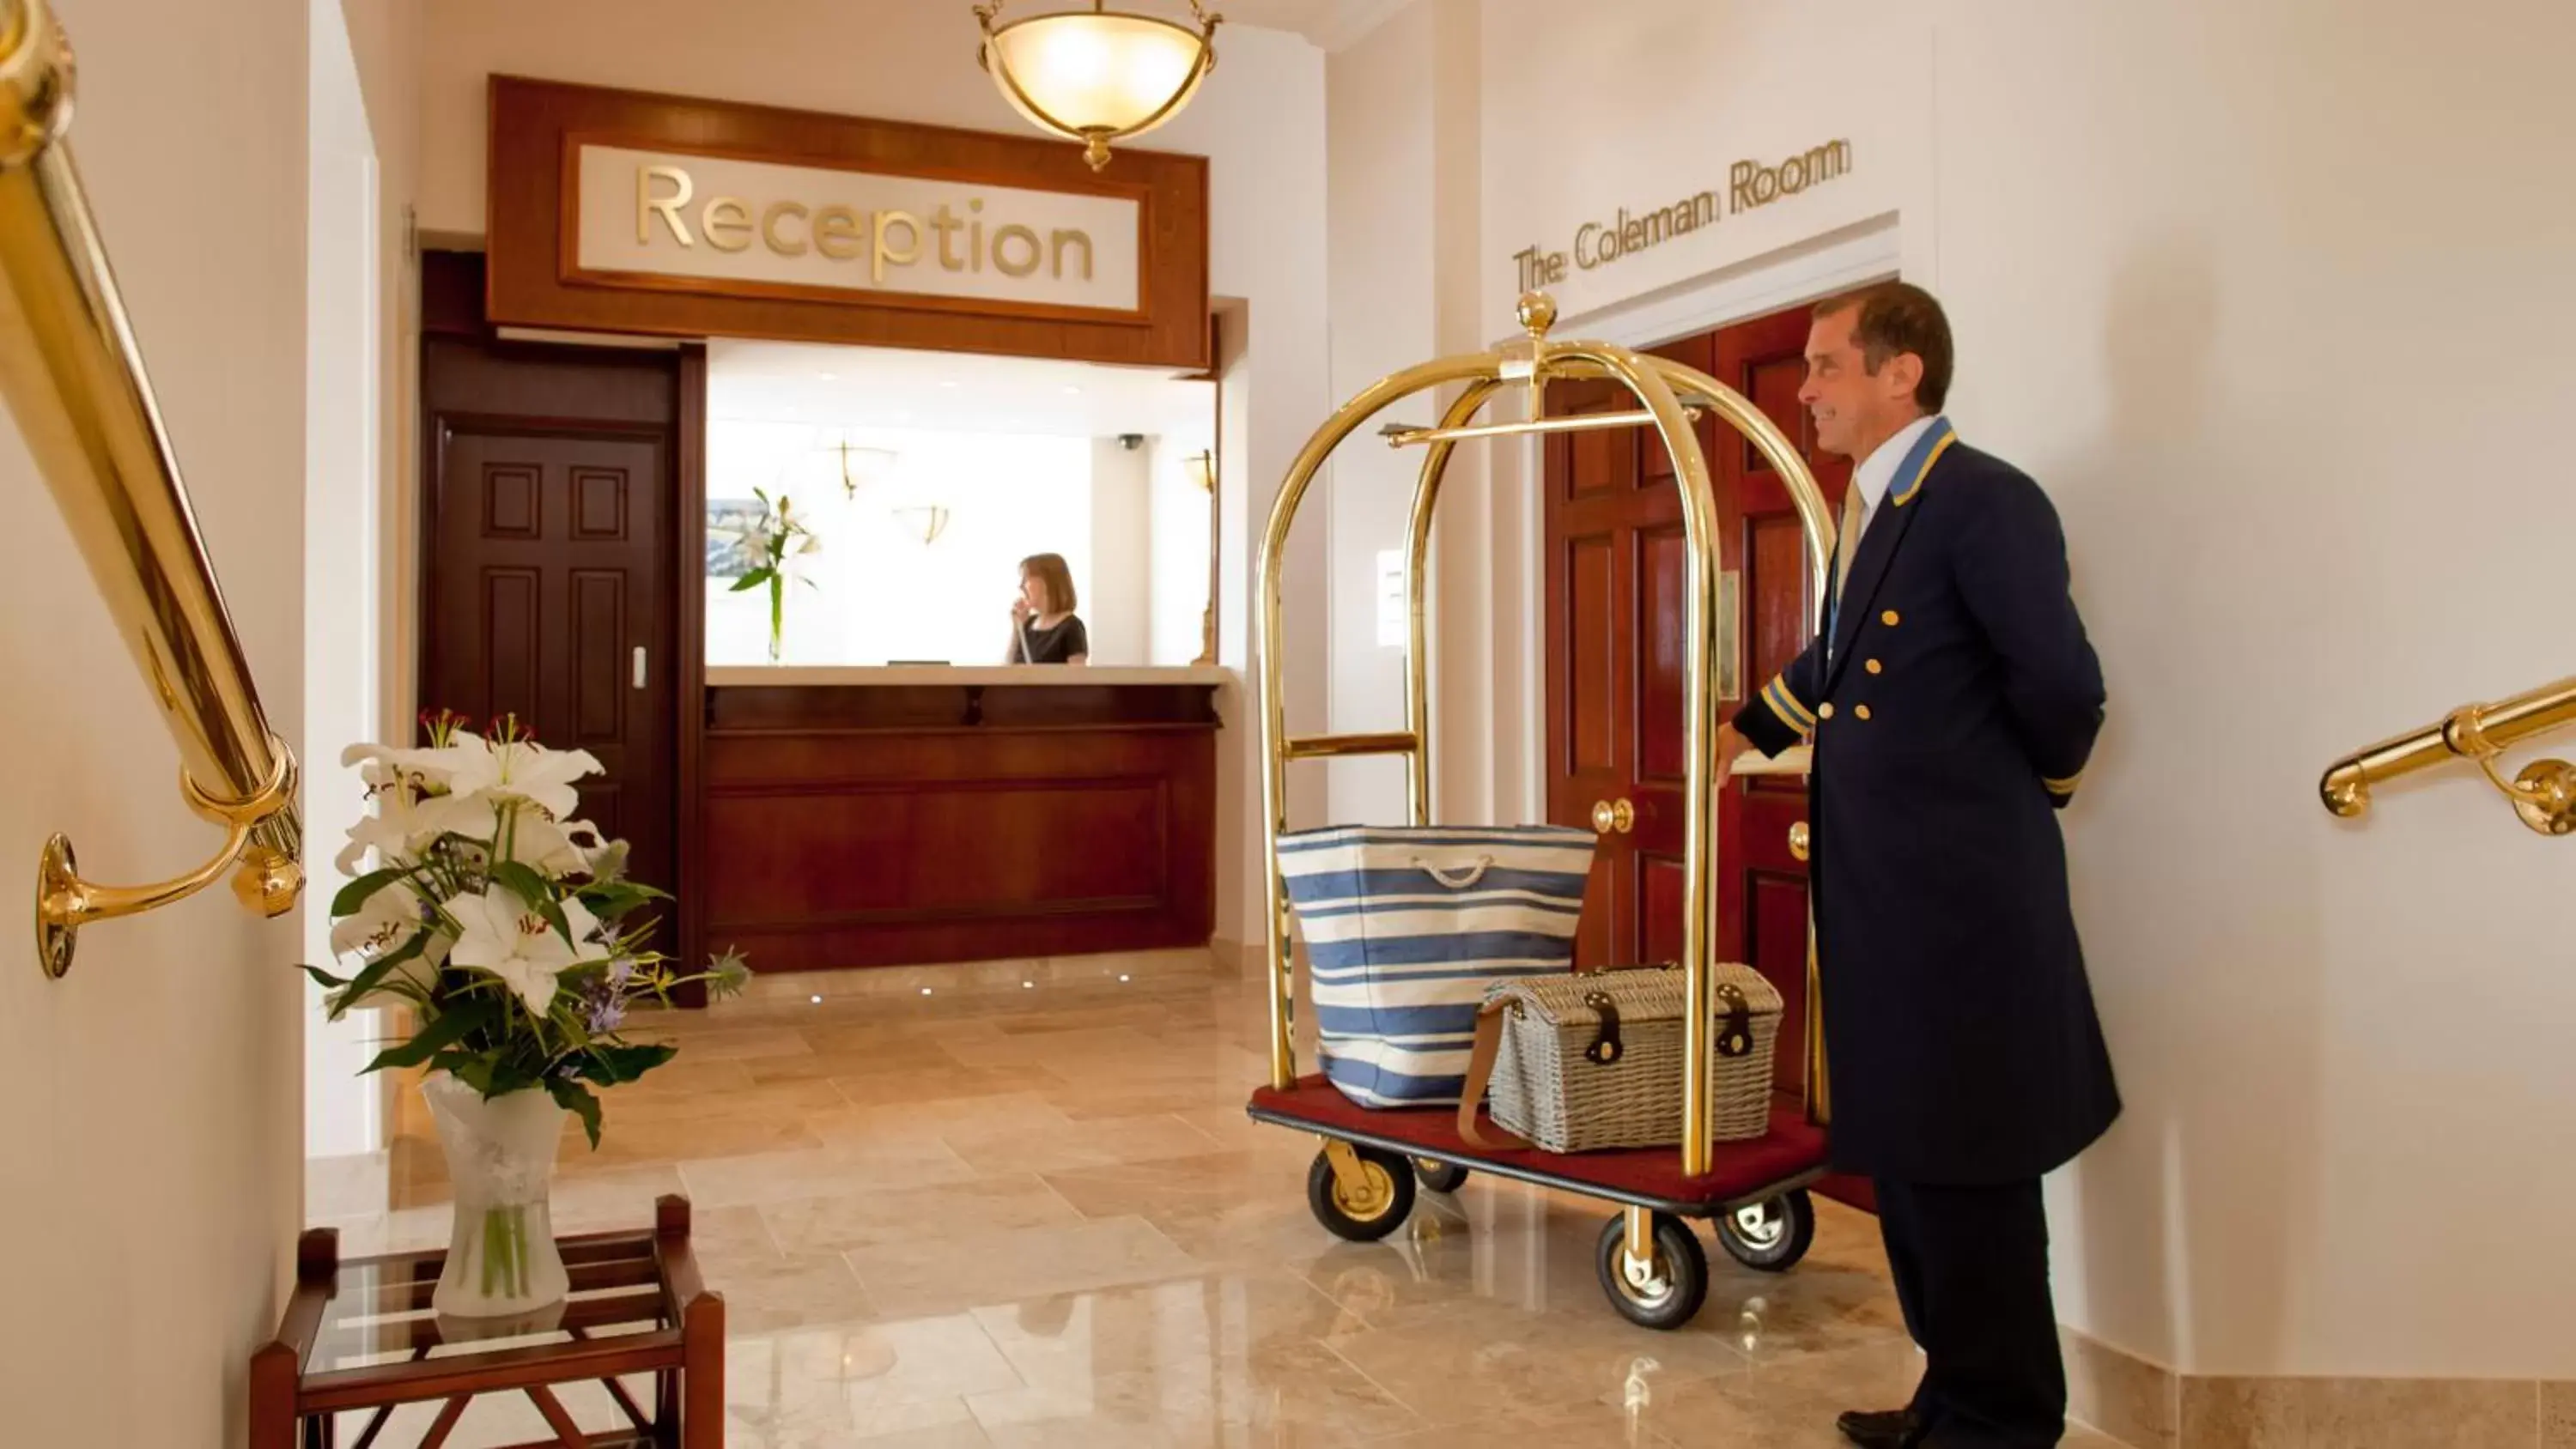 Lobby or reception in The Royal Duchy Hotel